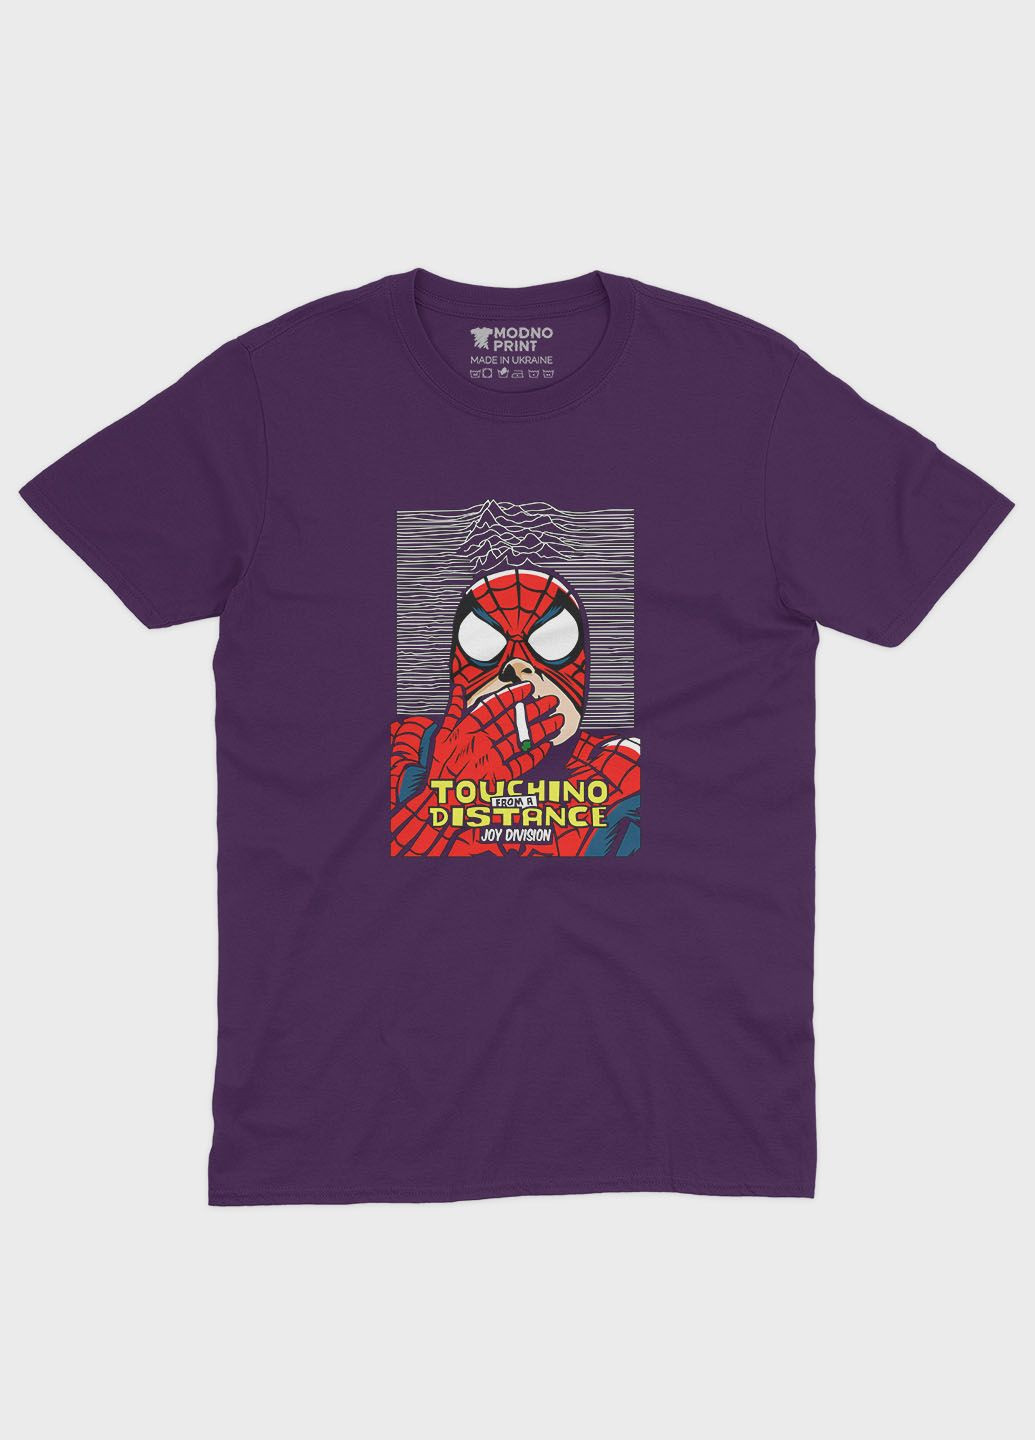 Фіолетова демісезонна футболка для дівчинки з принтом супергероя - людина-павук (ts001-1-dby-006-014-045-g) Modno